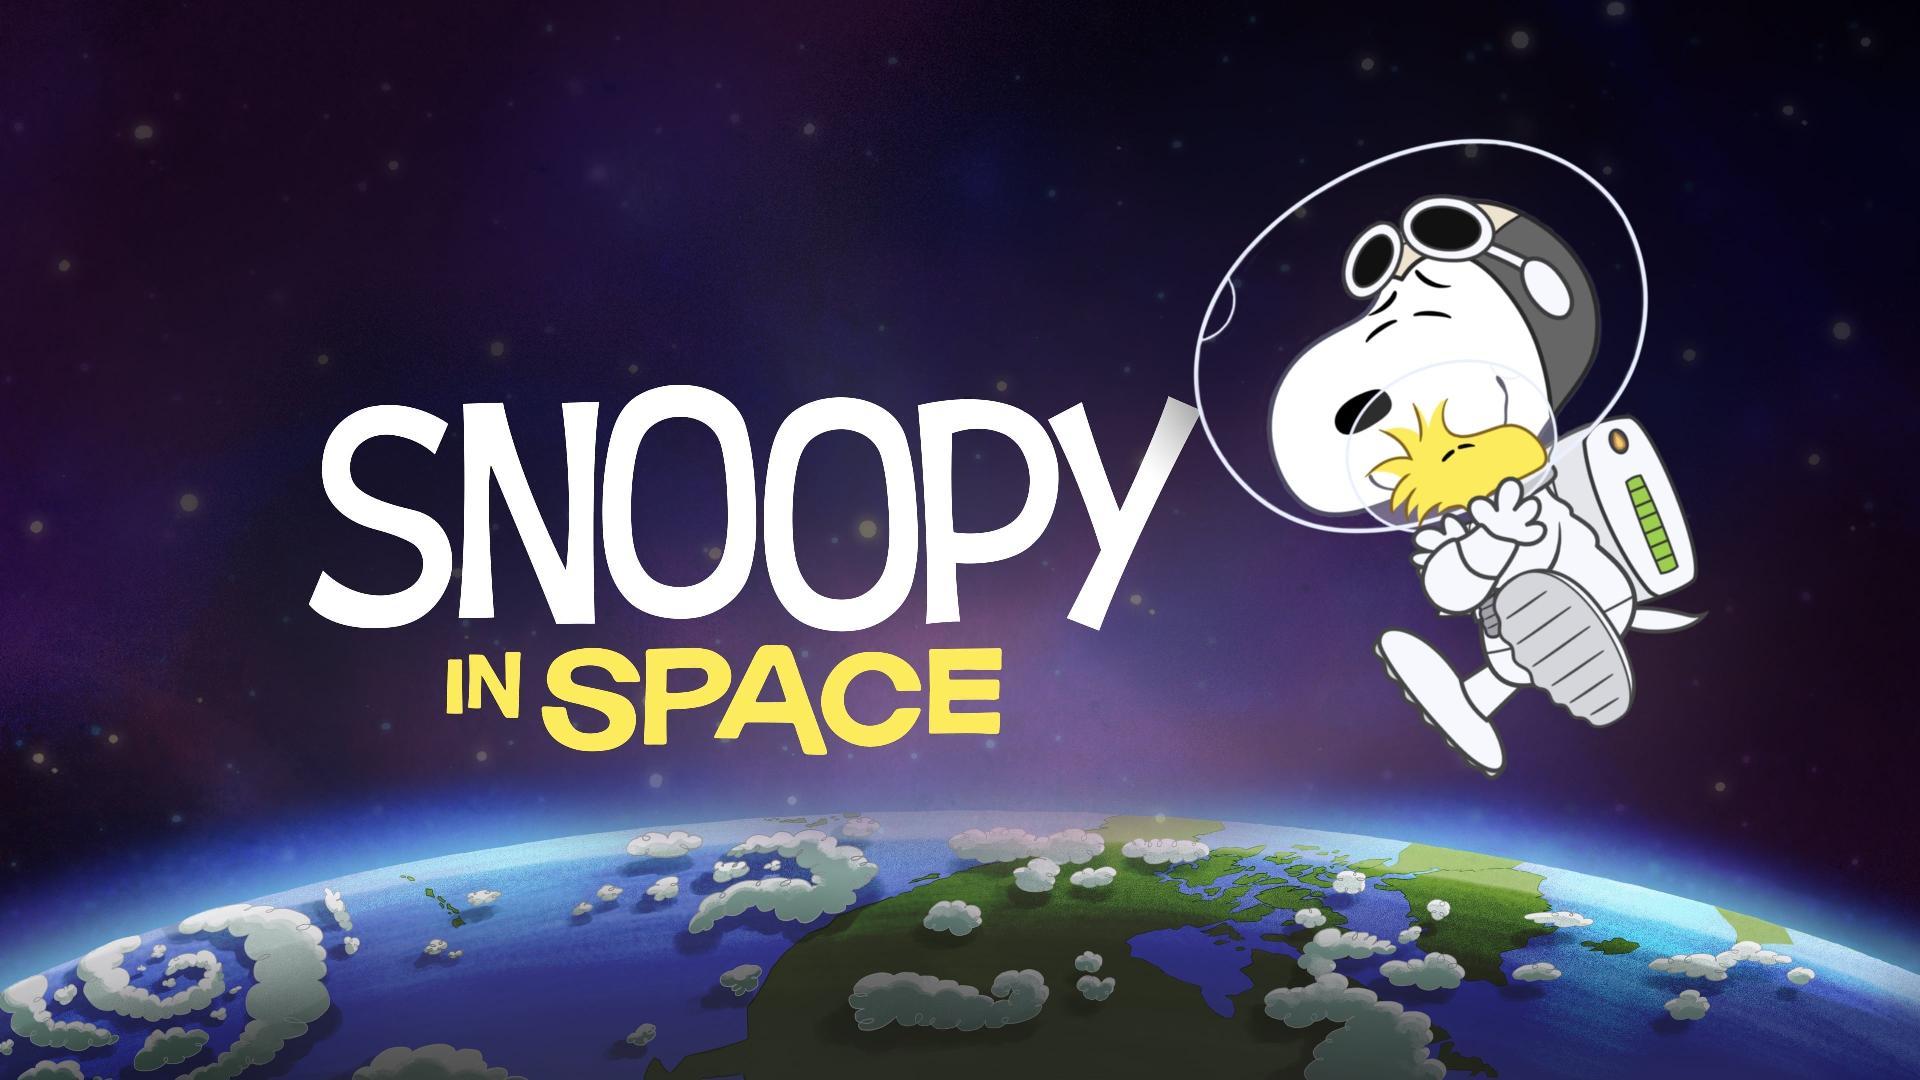 სნუპი კოსმოსში / Snoopy in Space